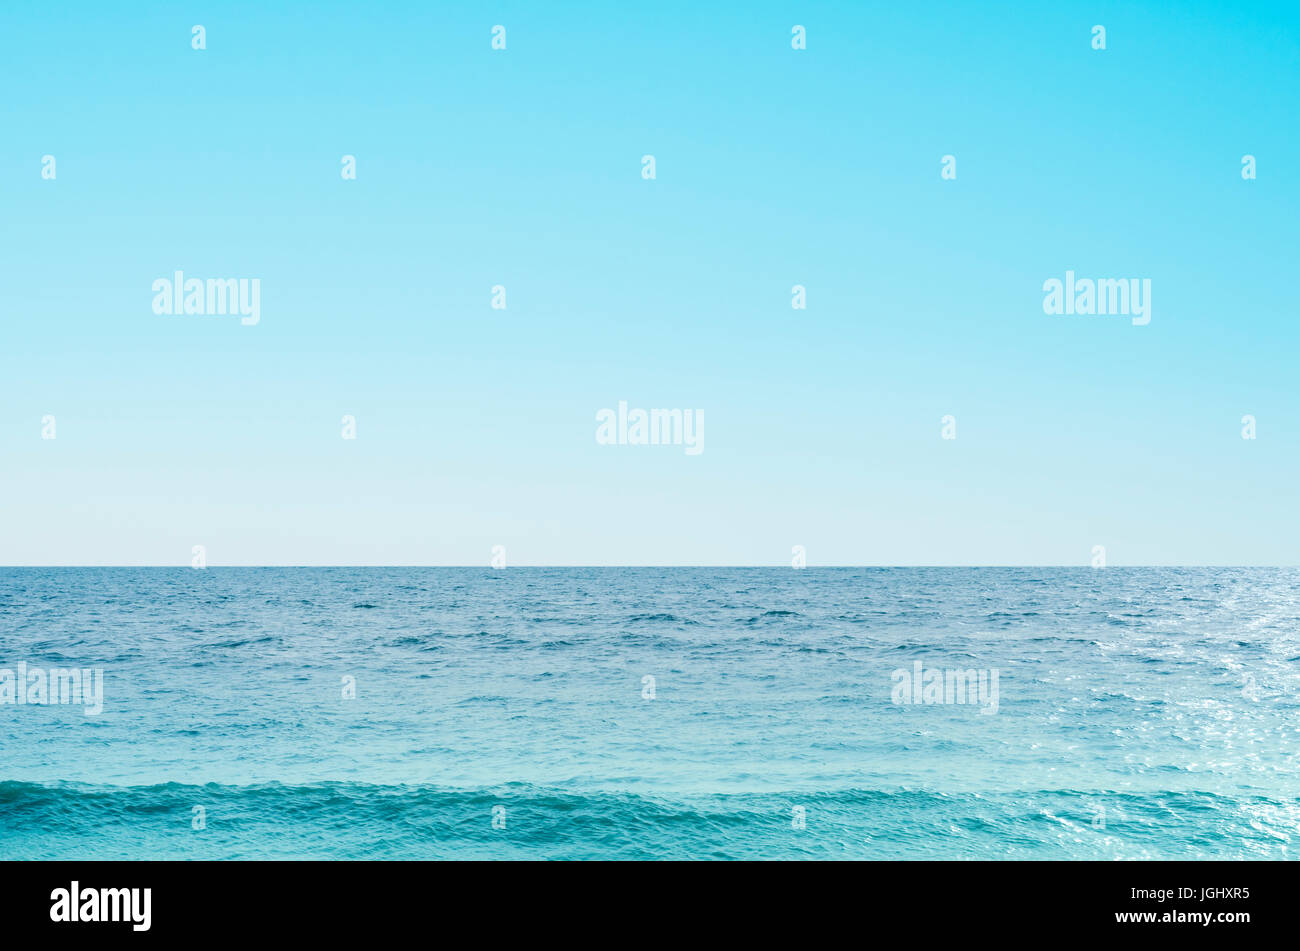 Hintergrundbild des Meeres und des Himmels mit Welle in Richtung der Vorderseite des Bildes bildet.  Klarer blauer Himmel und Windstille. Stockfoto